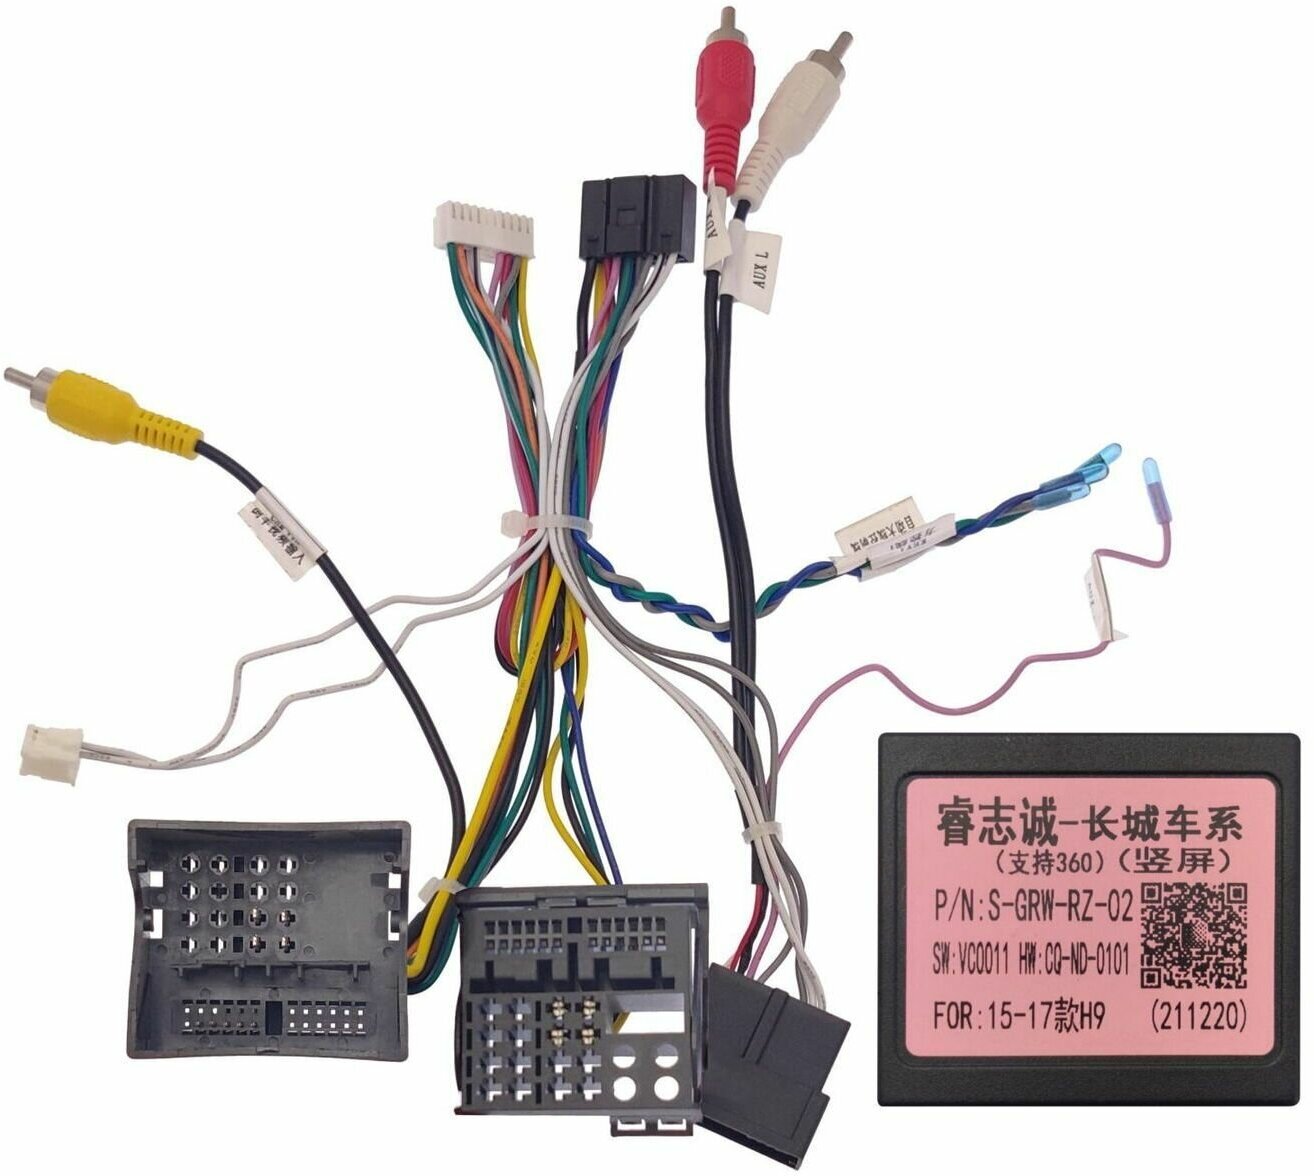 Комплект проводов для установки WM-MT в Haval H9 2015+ (основной, USB, CAN)